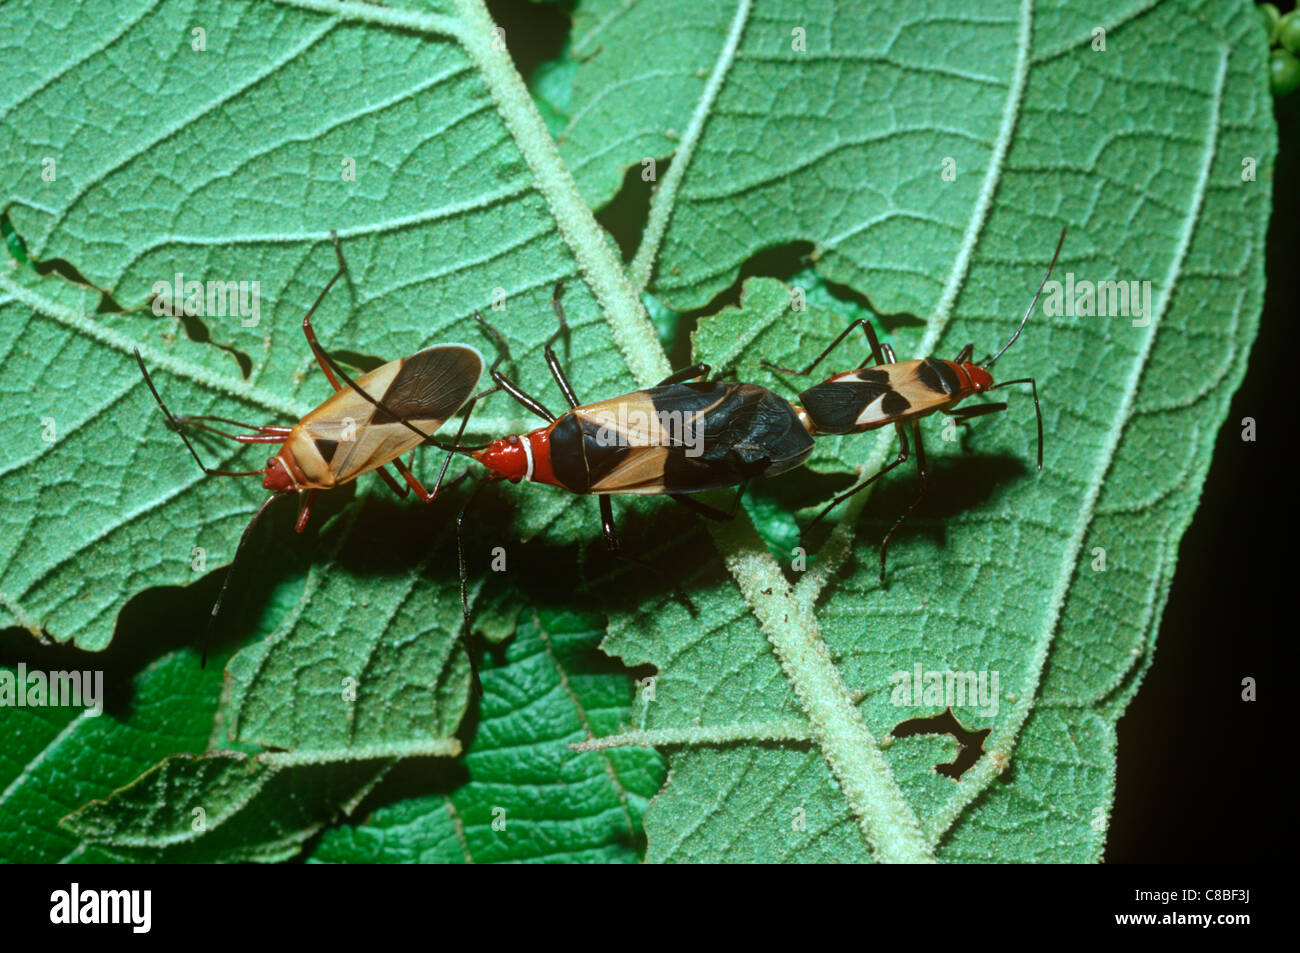 Baumwolle-Stainer Bugs (Dysdercus Mimus: Pyrrhocoridae) warnend farbige Paarung paar und Kannibalismus, Regenwald, costarica. Stockfoto